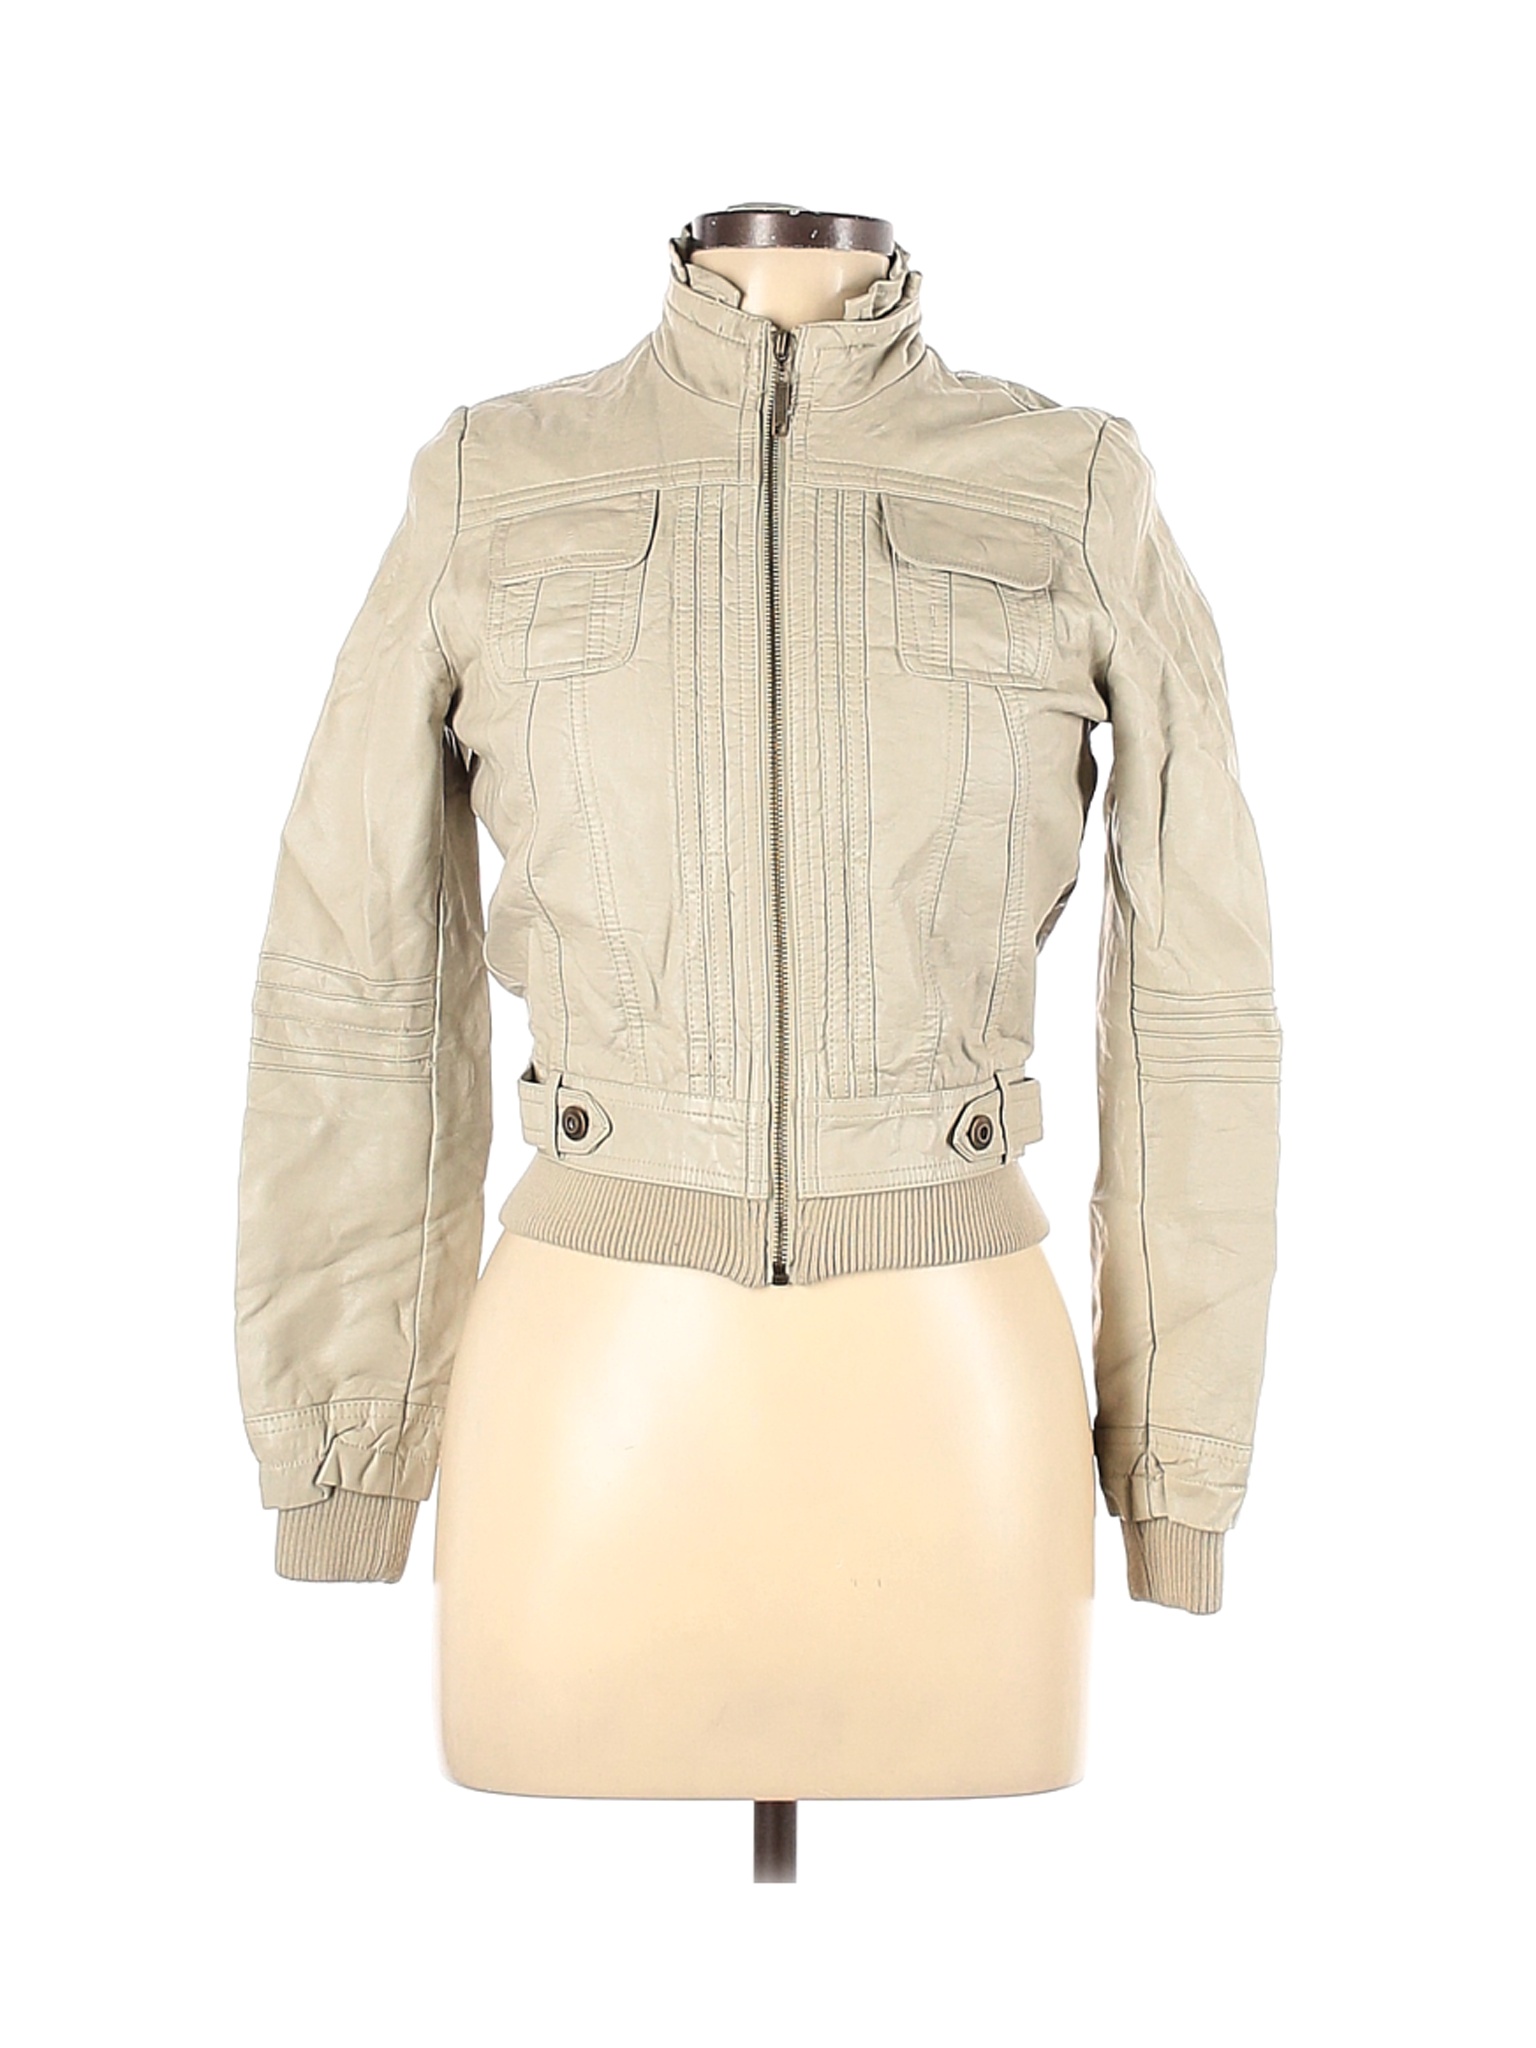 JouJou Women Brown Faux Leather Jacket L | eBay